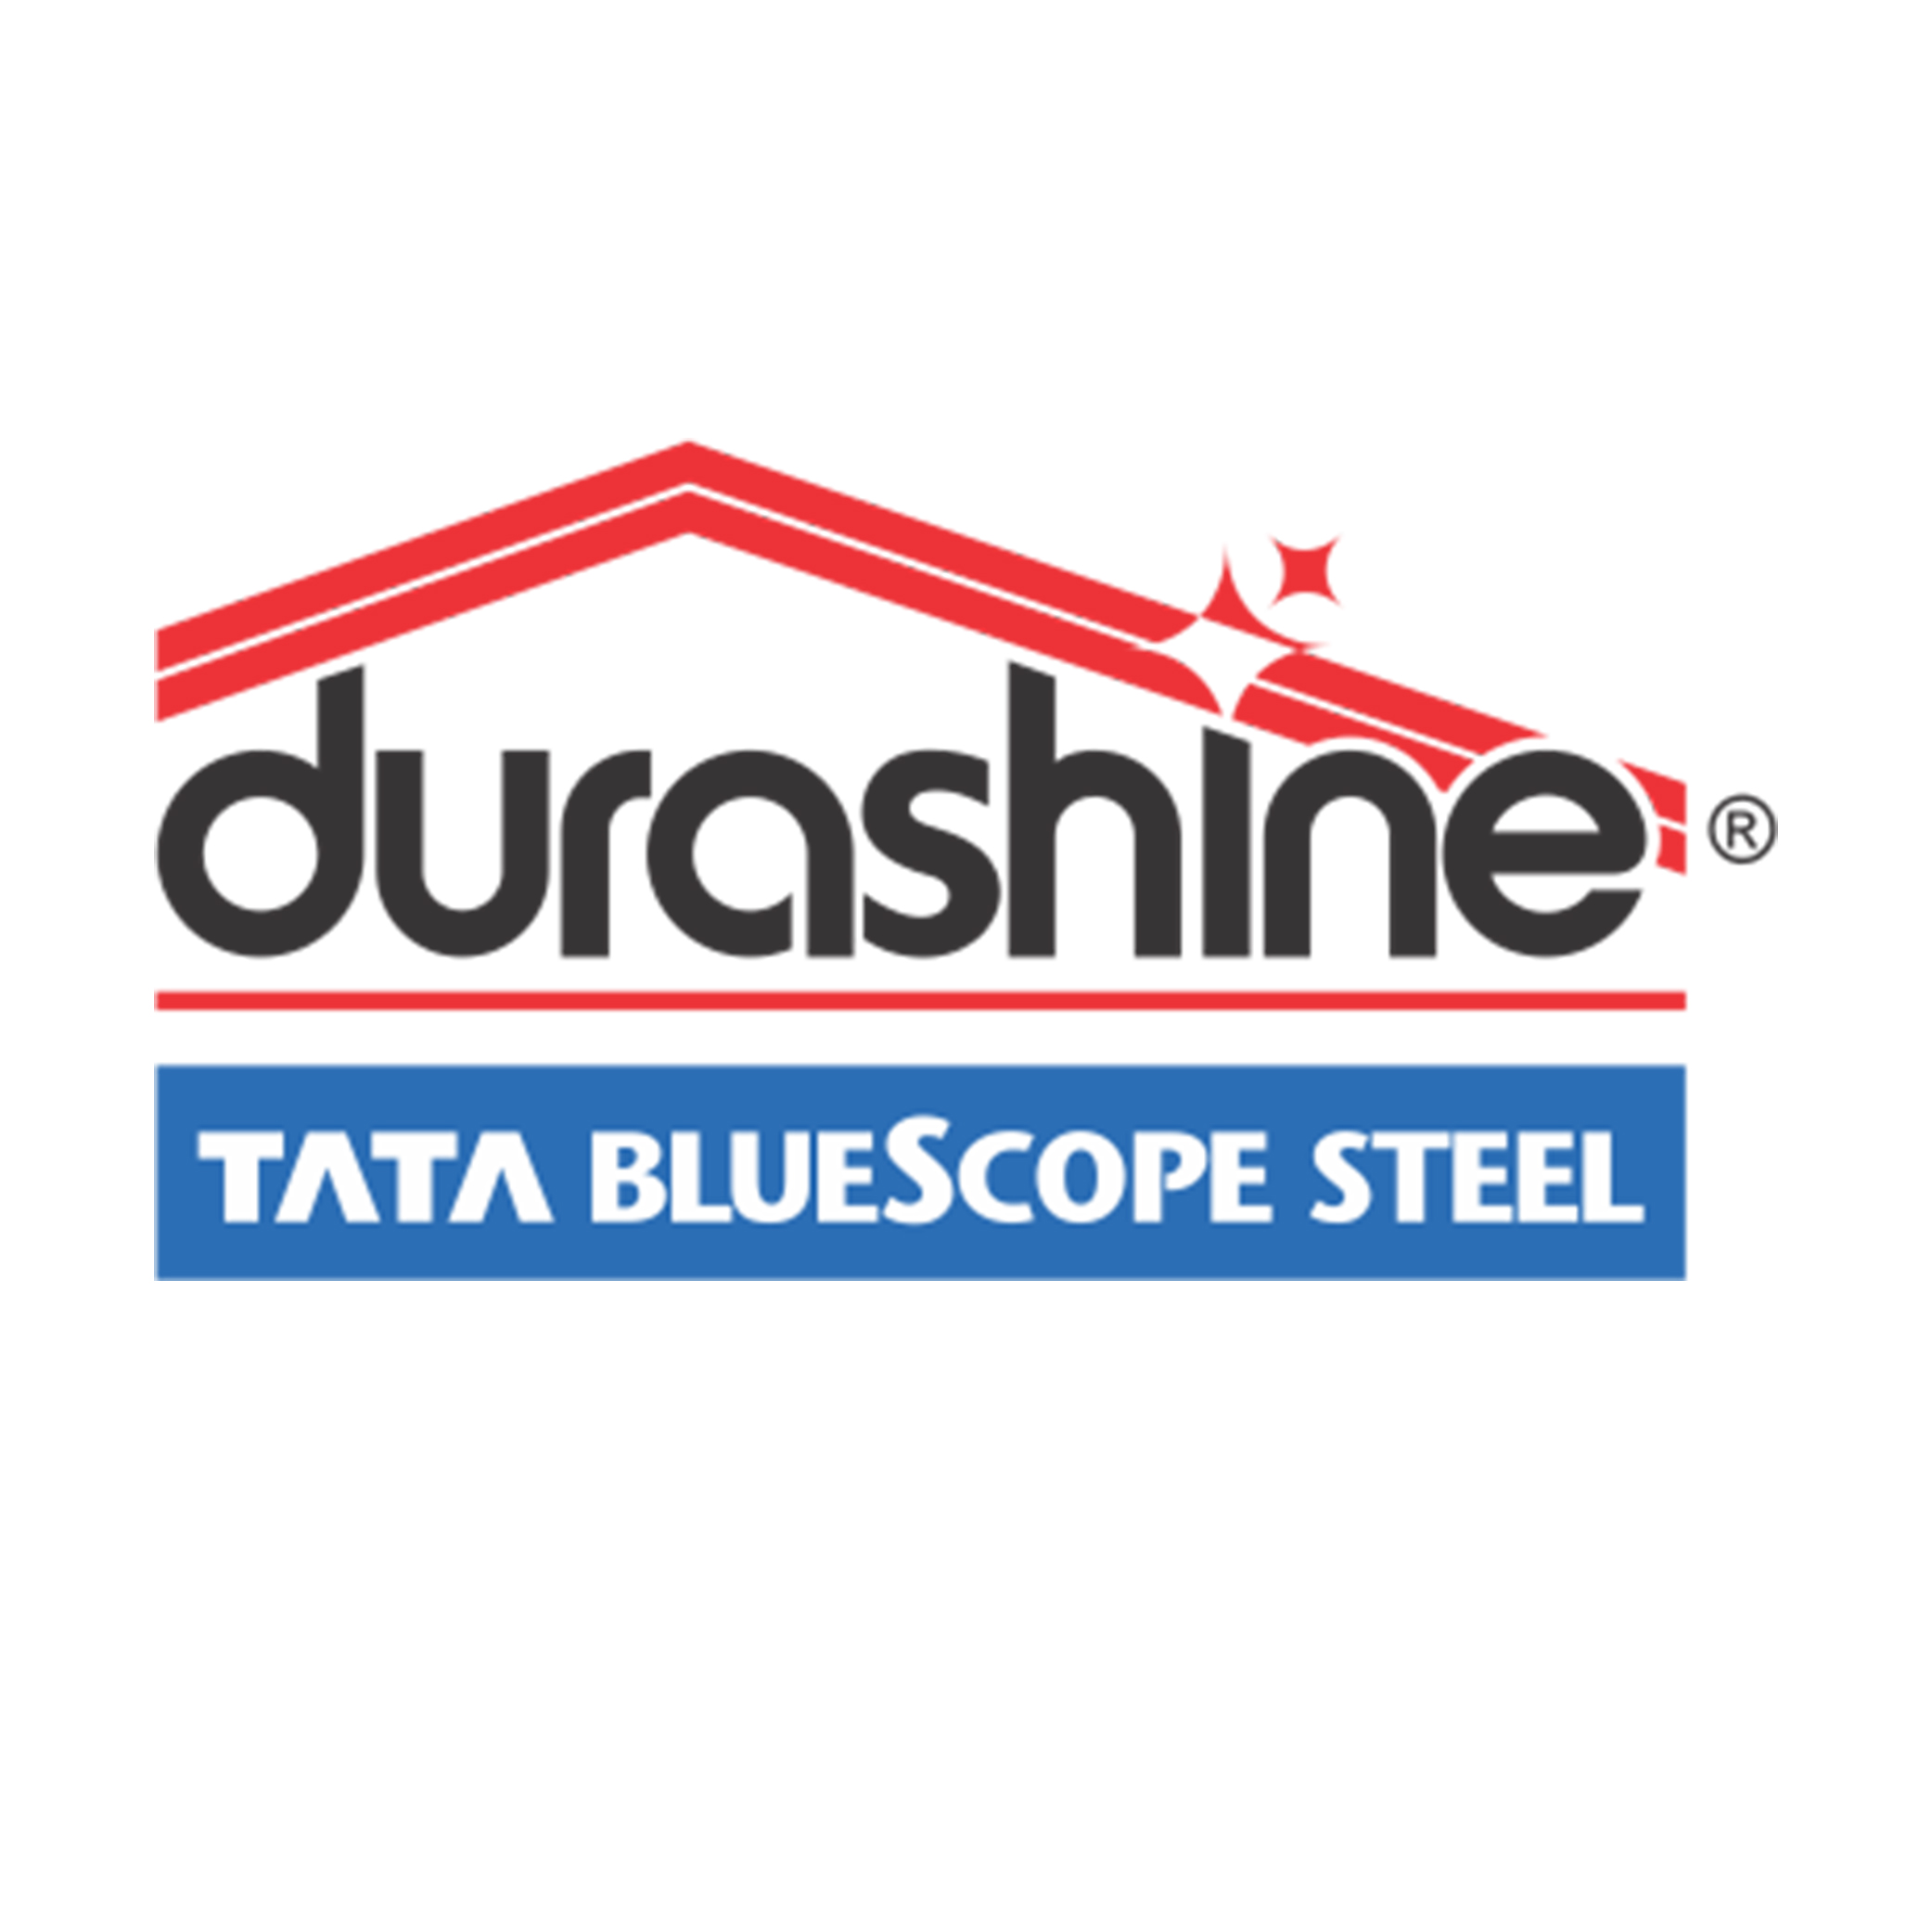 TATA BlueScope logo